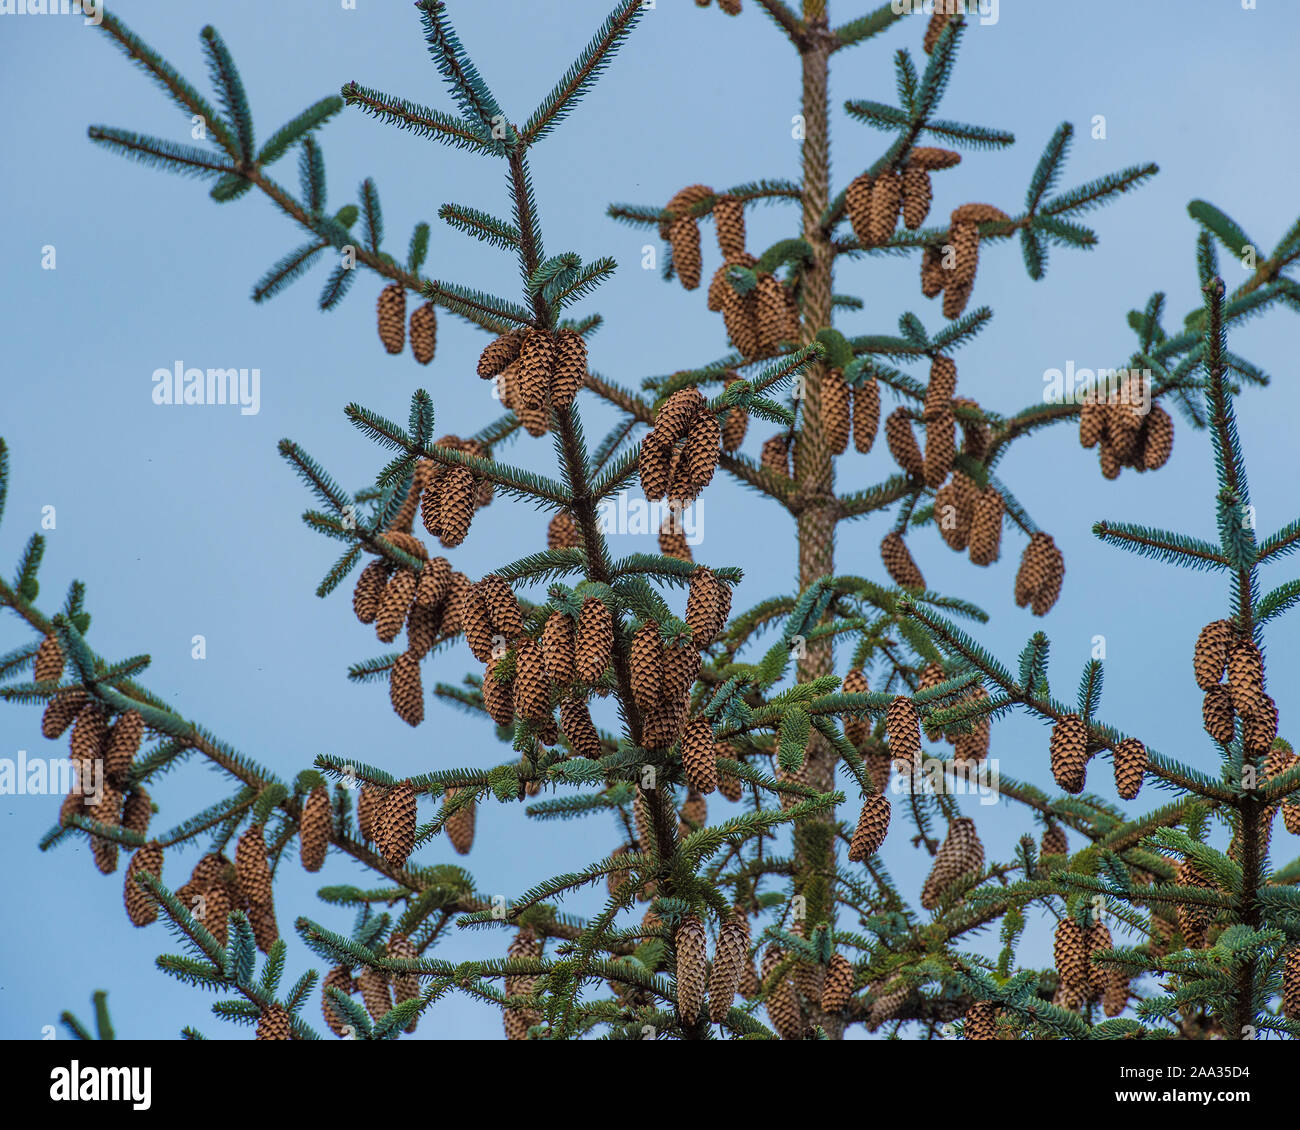 cones on spruce tree Stock Photo